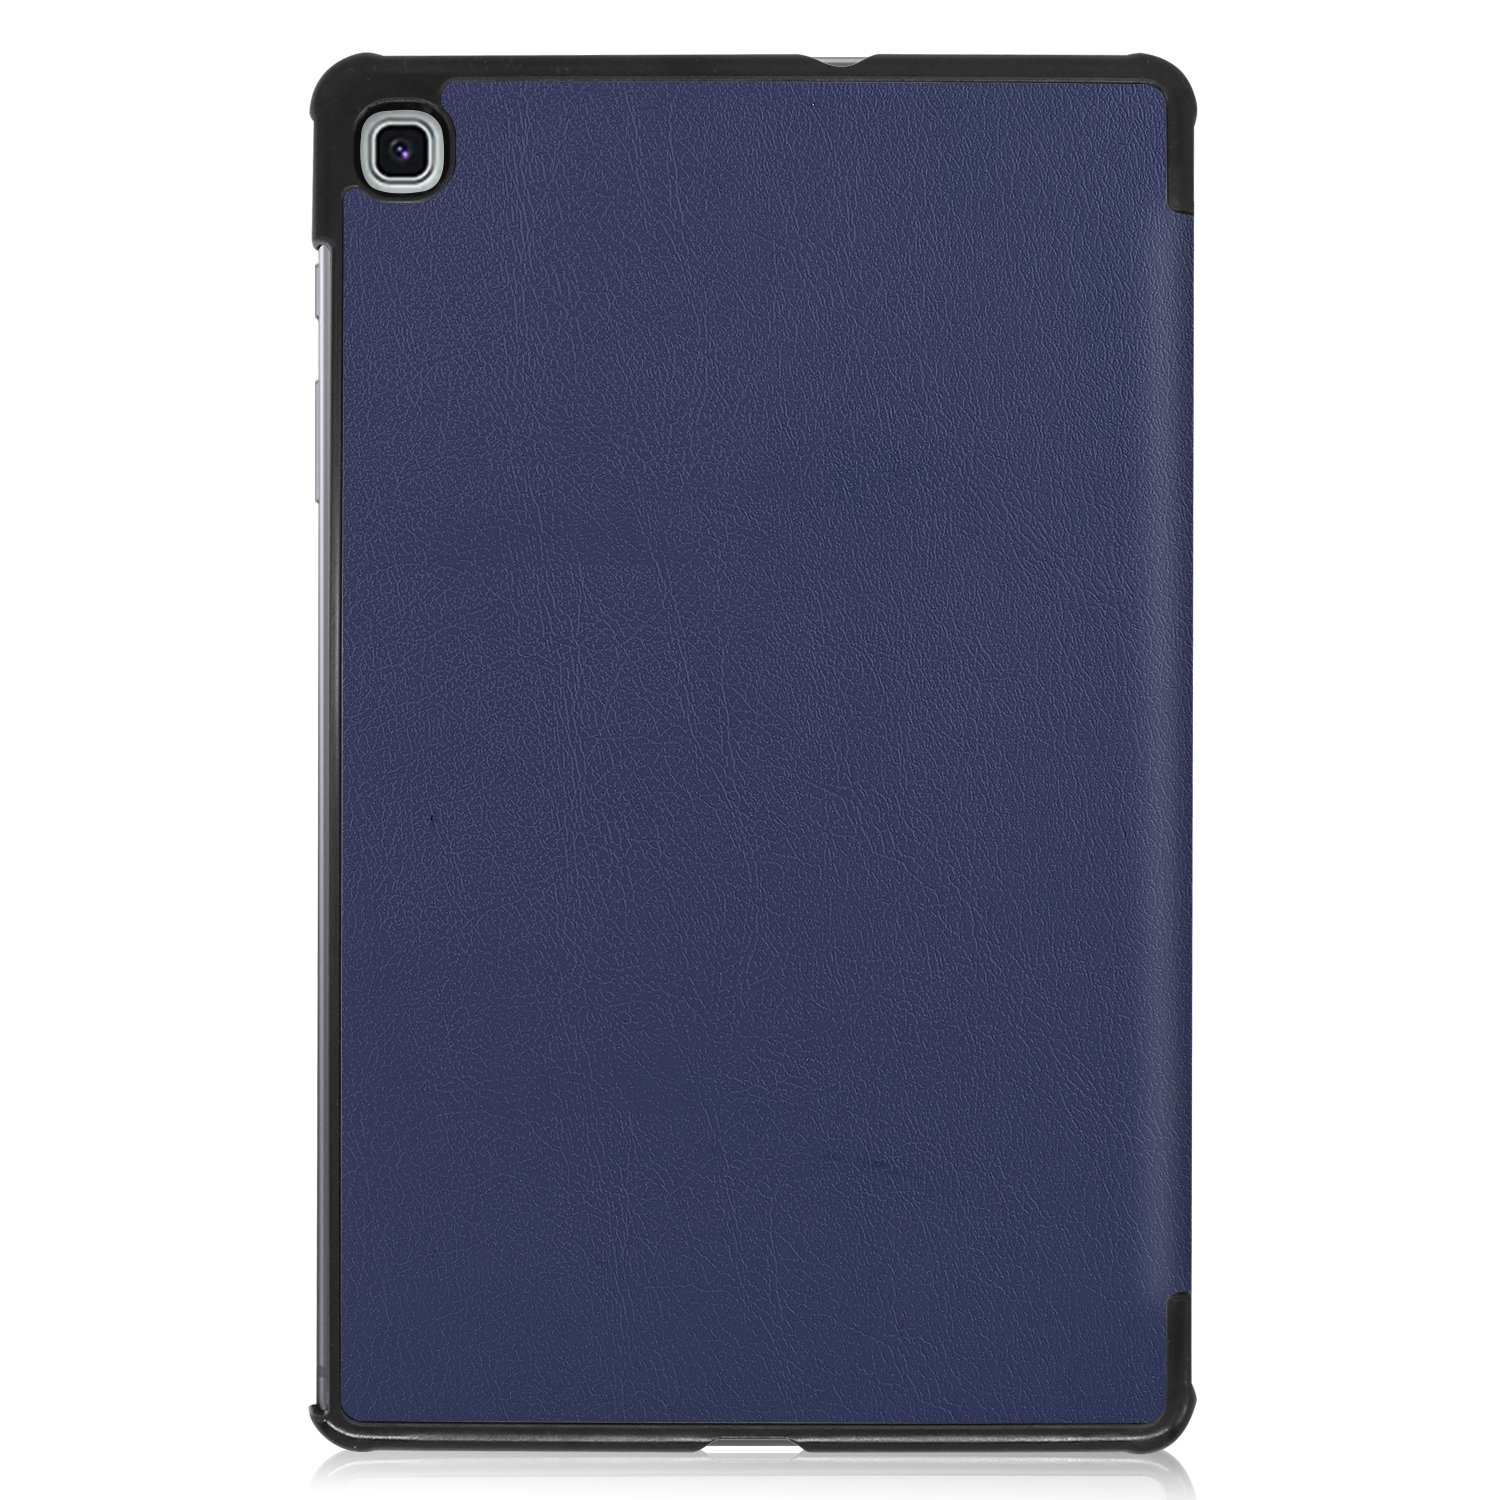 Case Auto Wake Up, Samsung Galaxy Tab S6 Lite 10.4 P610, dark blue